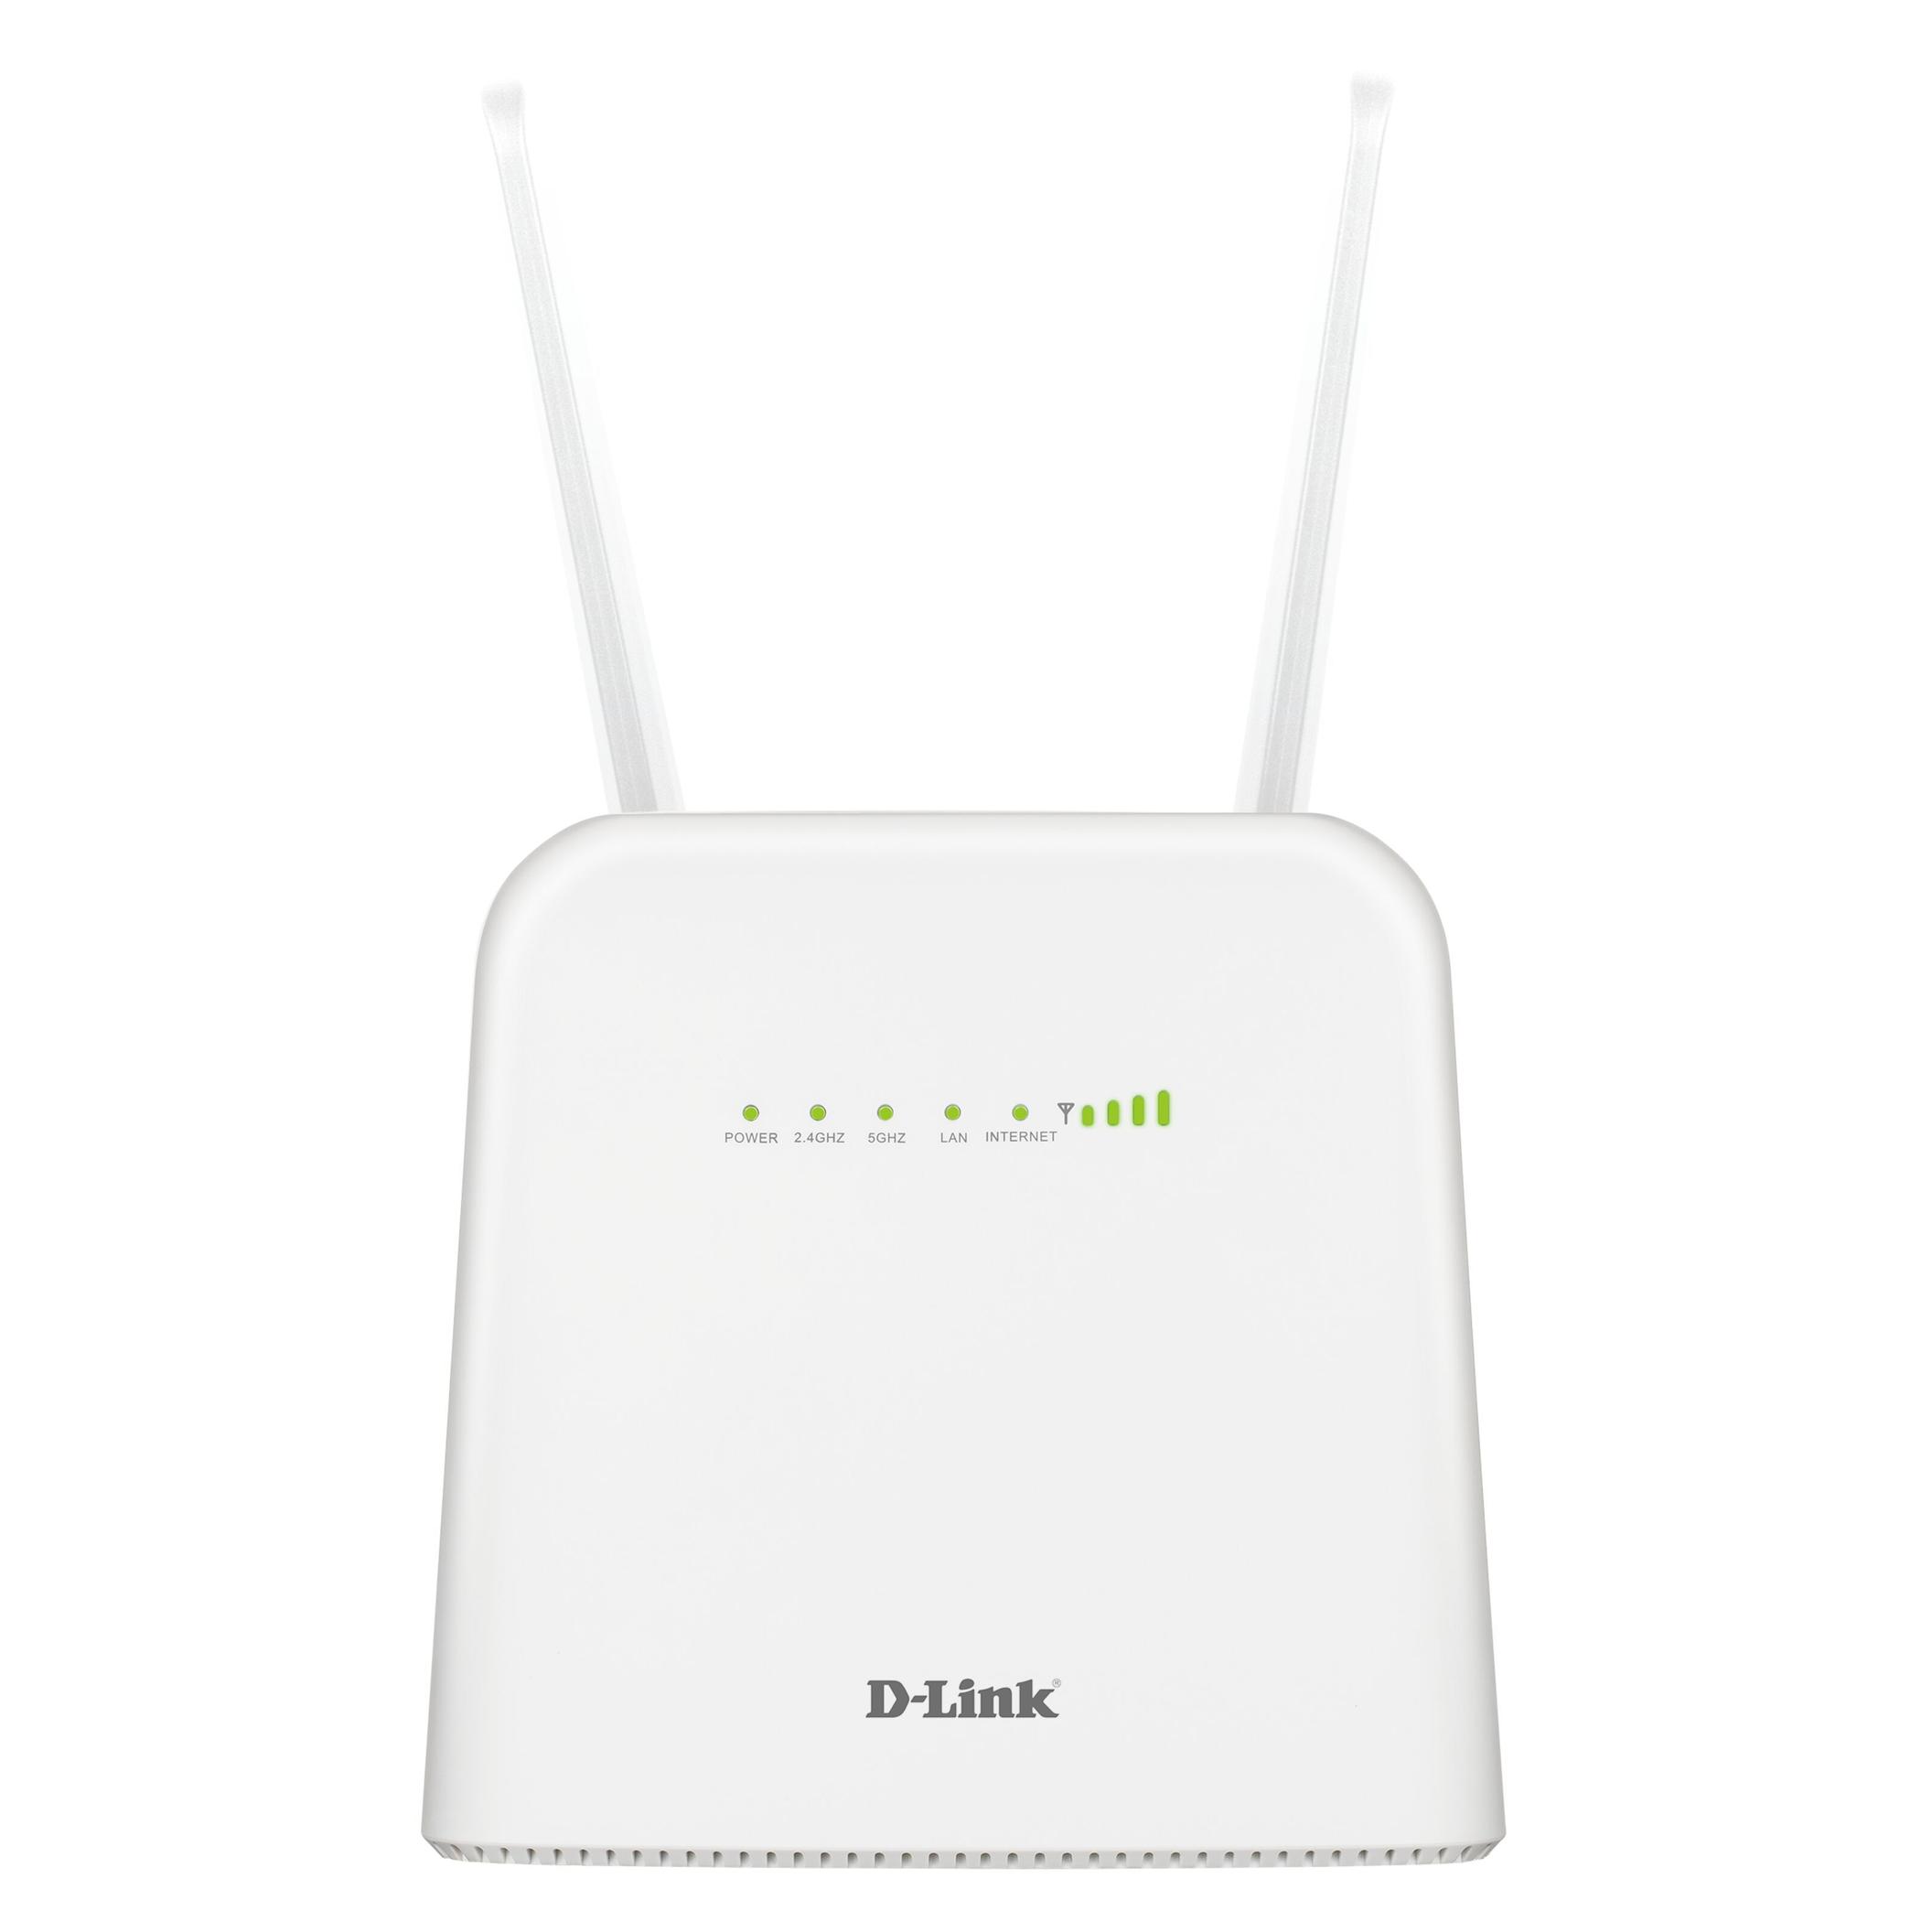 DWR-960/W 4G+ router för 890 kr på Kjell & Company